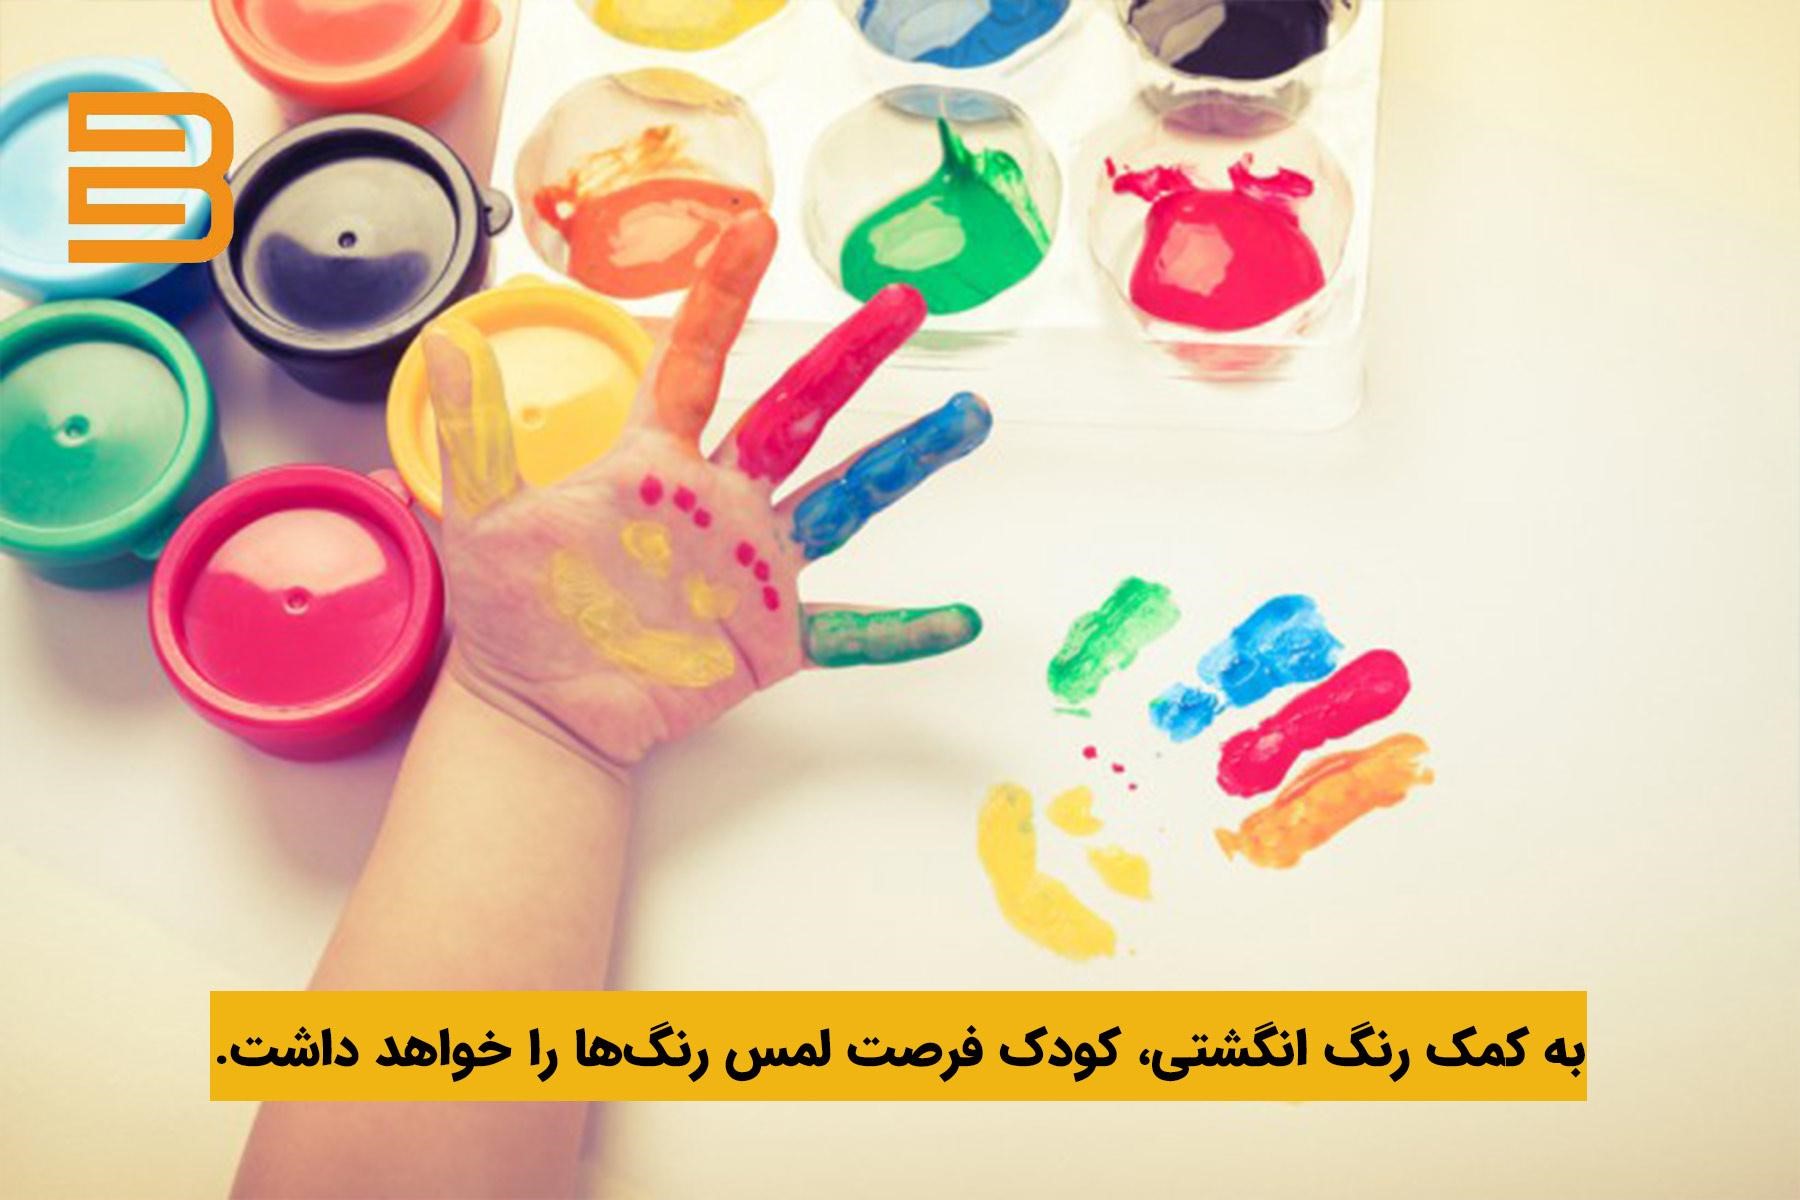 رنگ انگشتی؛ ابزاری کاربردی برای آموزش رنگ به کودکان